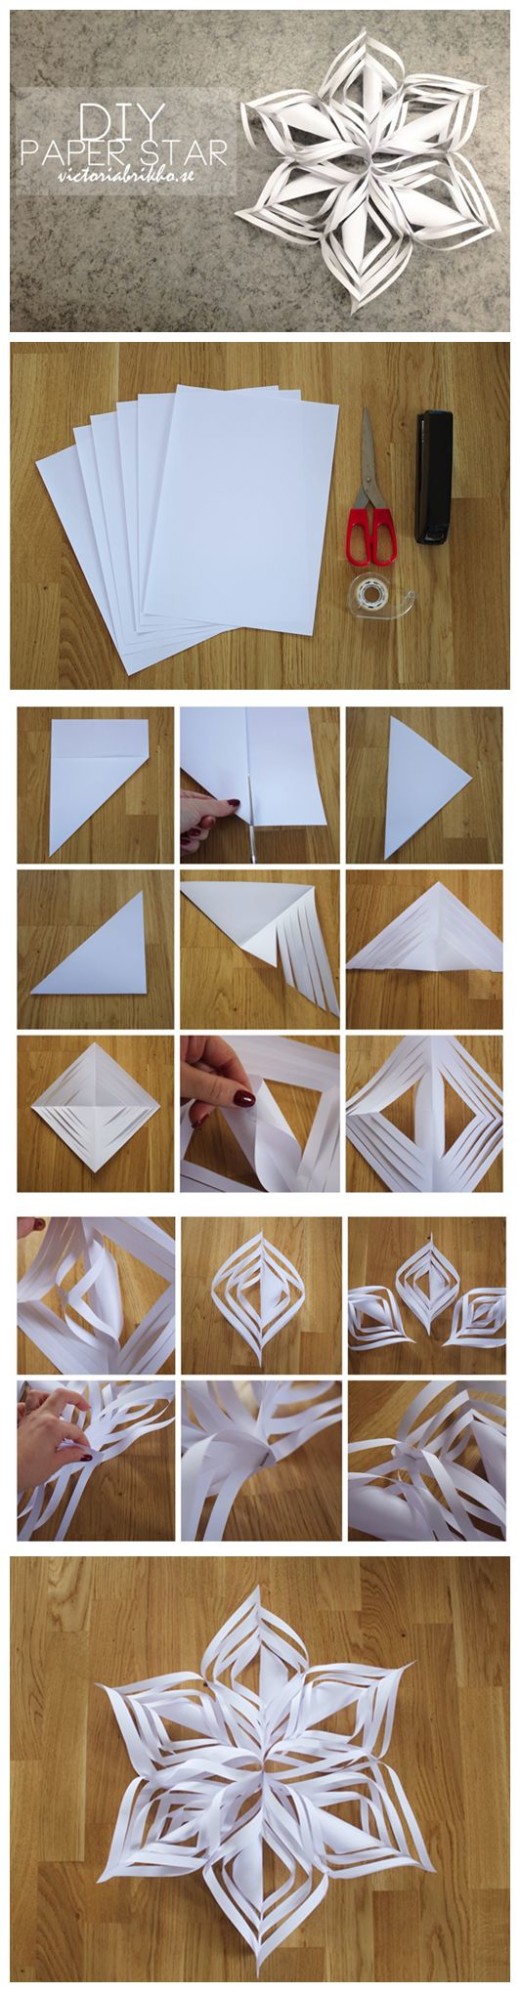 DIY Paper Star